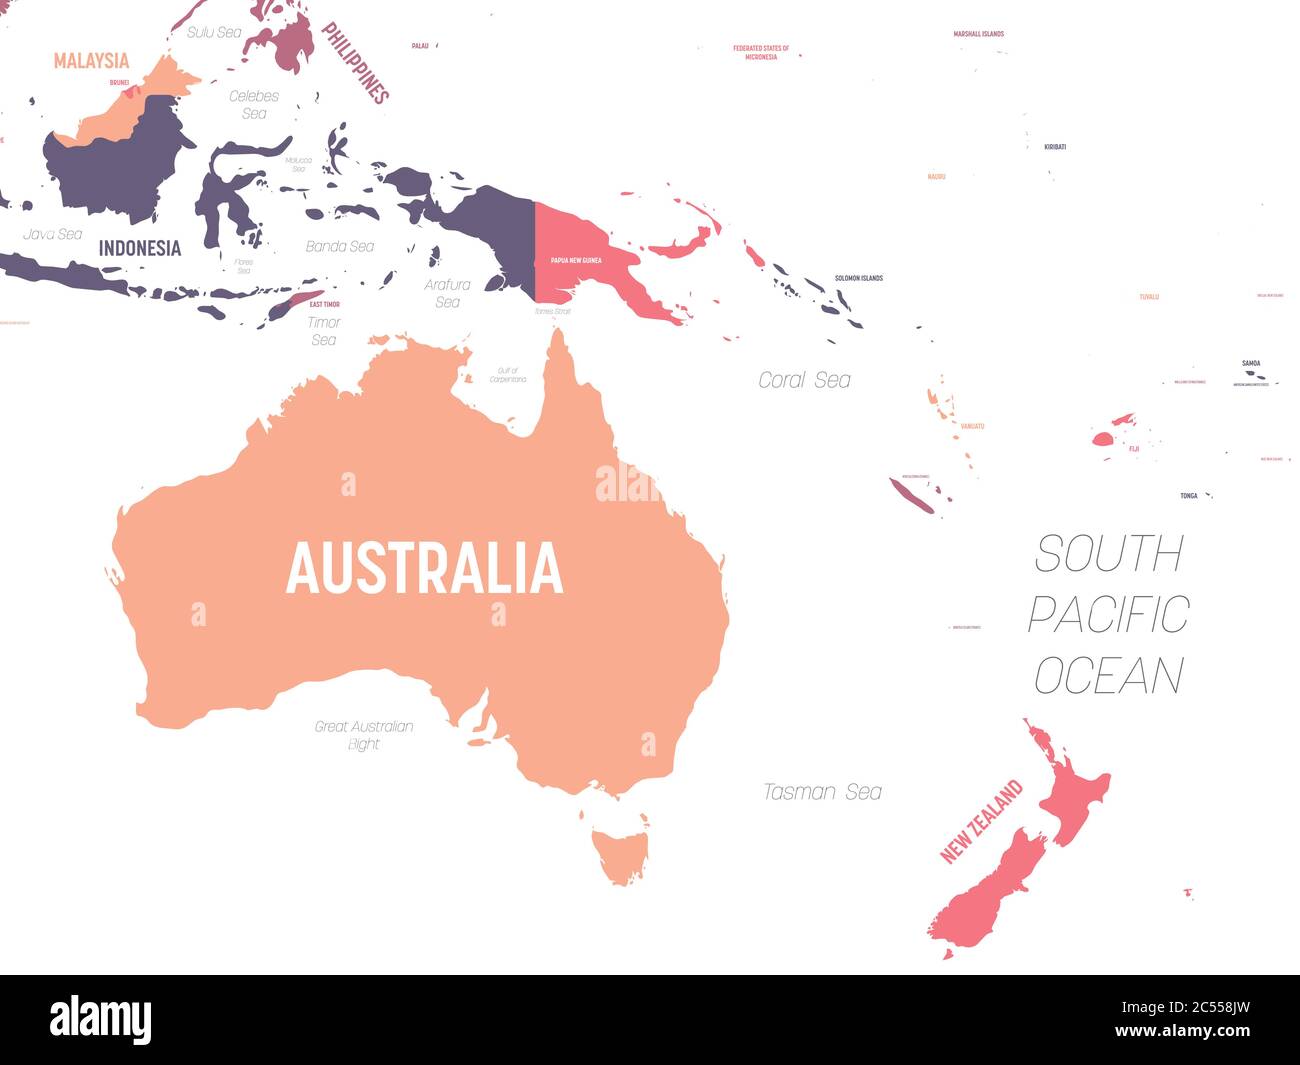 Karte Australien und Ozeanien. Hoch detaillierte politische Karte der australischen und pazifischen Region mit Land-, Meer- und Meeresnamen Kennzeichnung. Stock Vektor